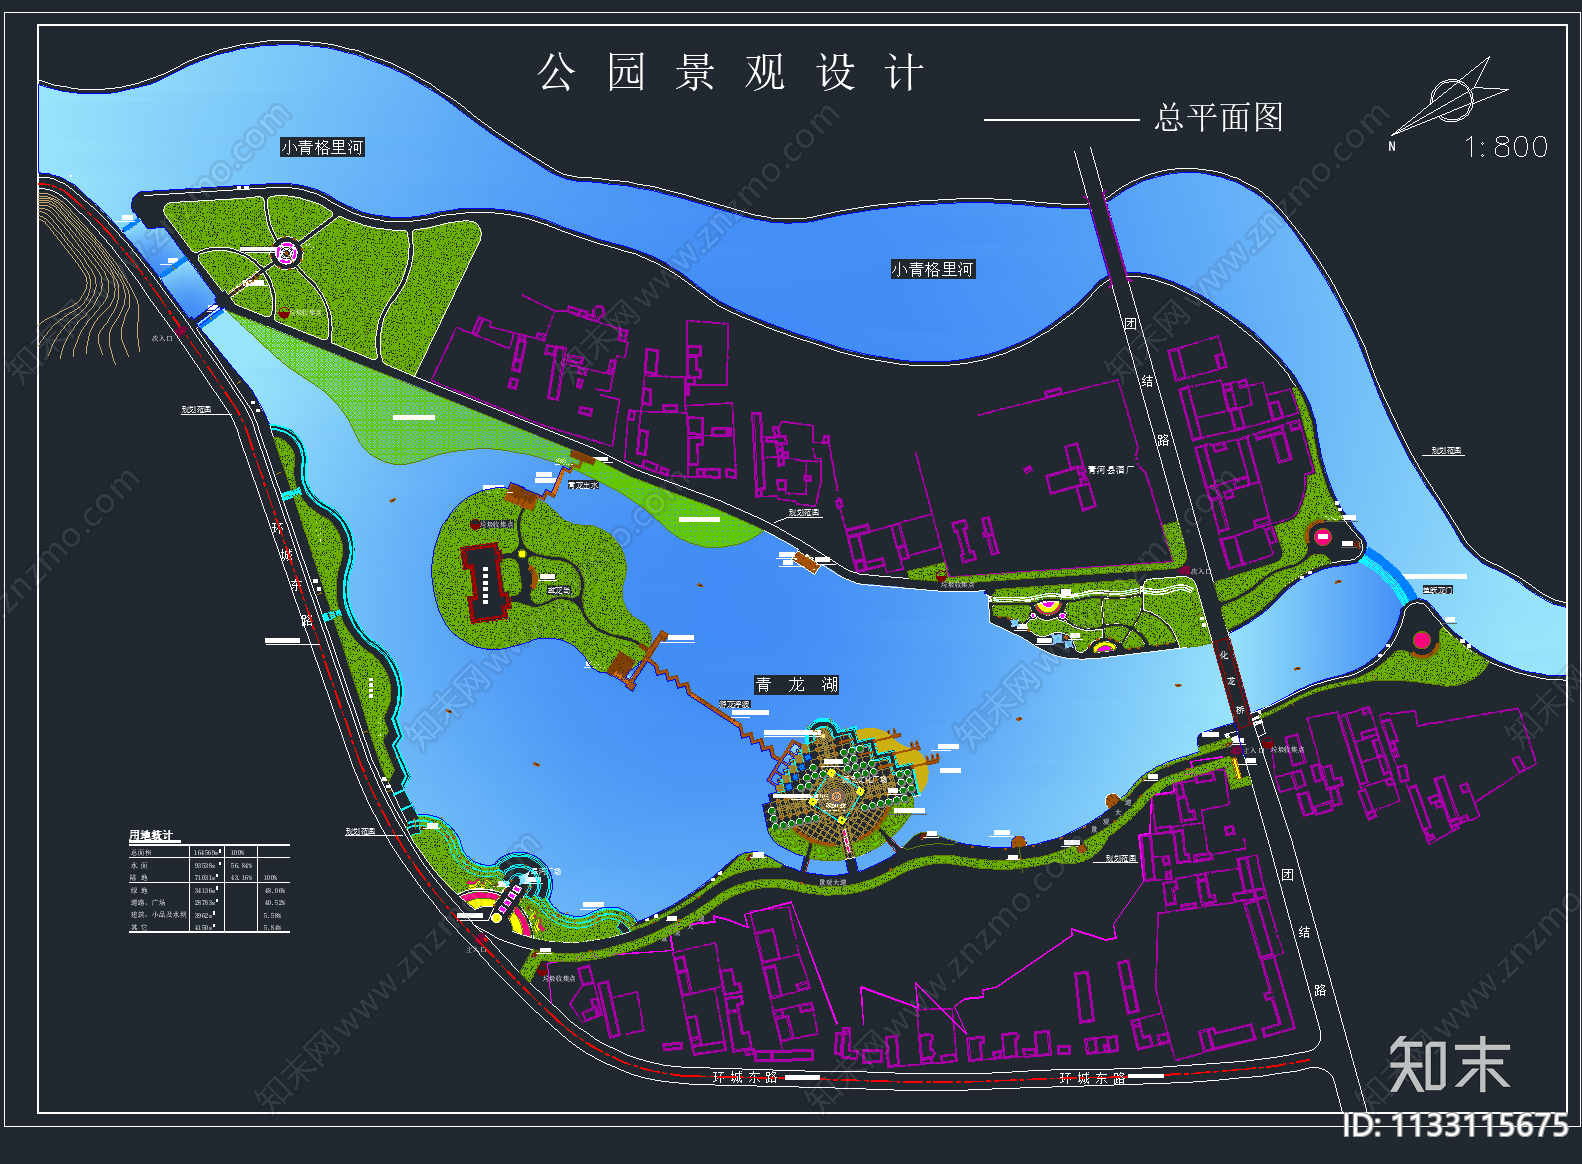 34套滨水湿地河道公园景观平面图施工图下载【ID:1133115675】